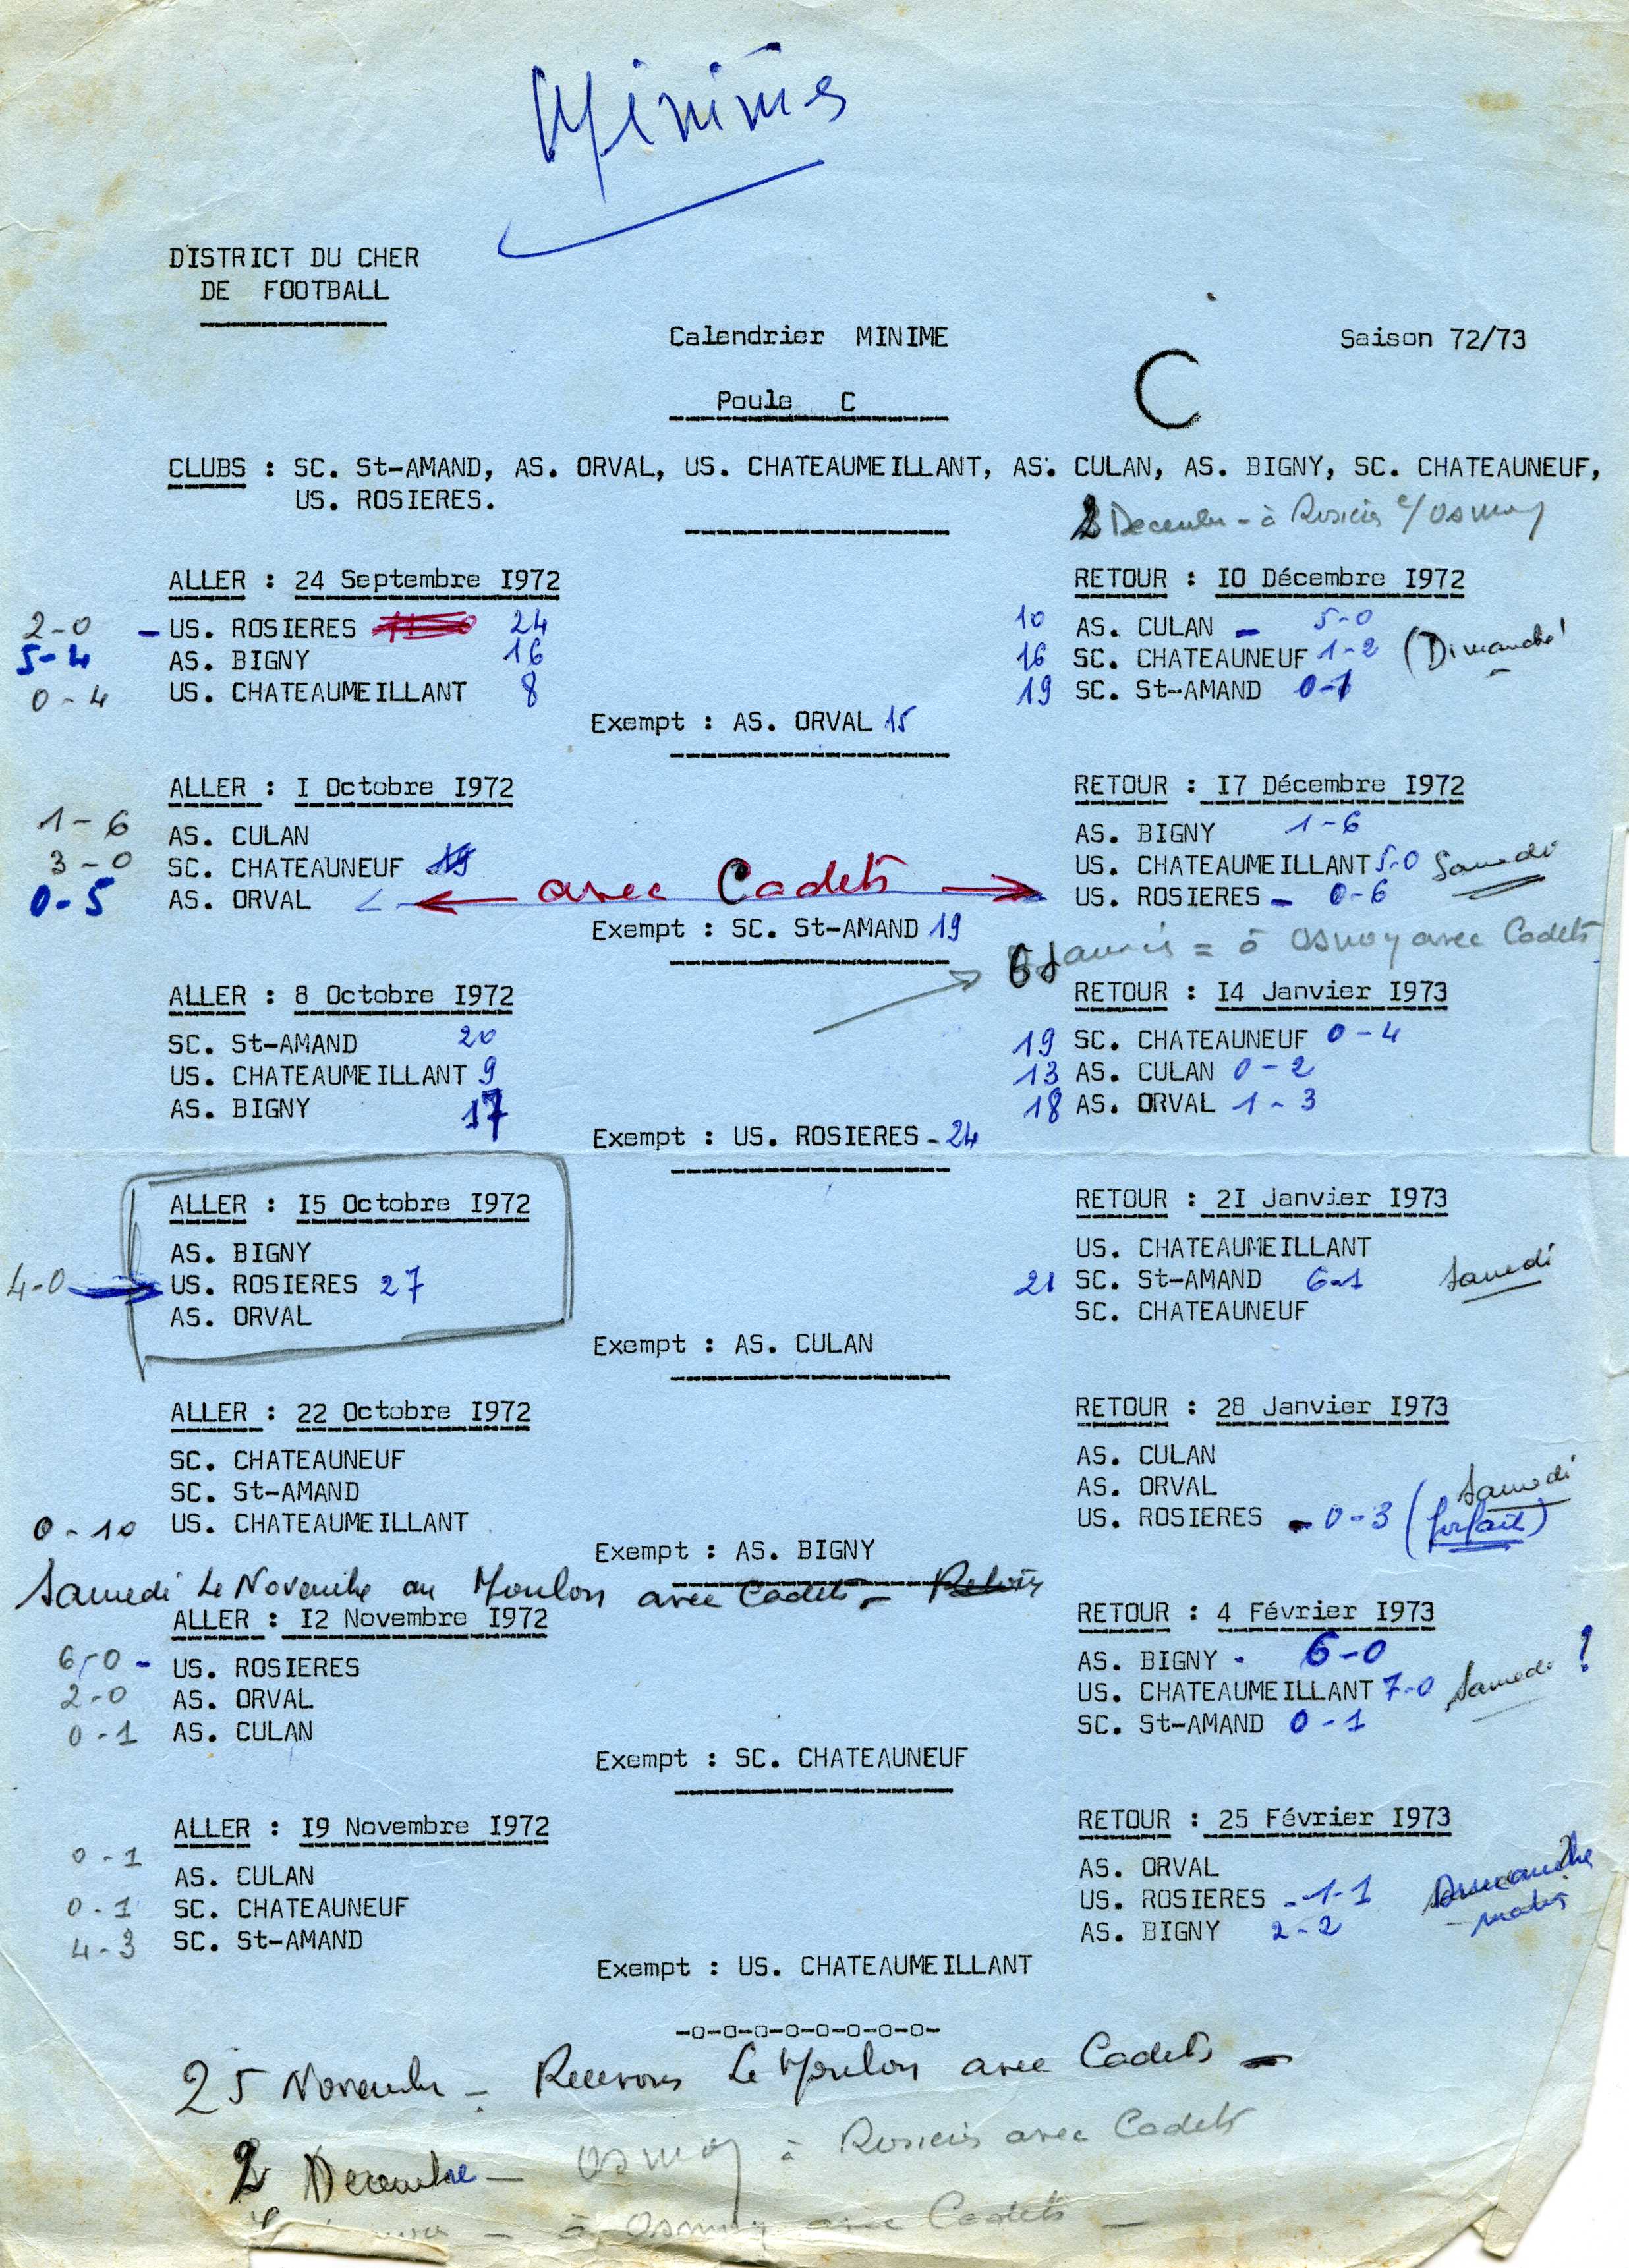 District du Cher, calendrier Minime Poule C saison 1972-1973